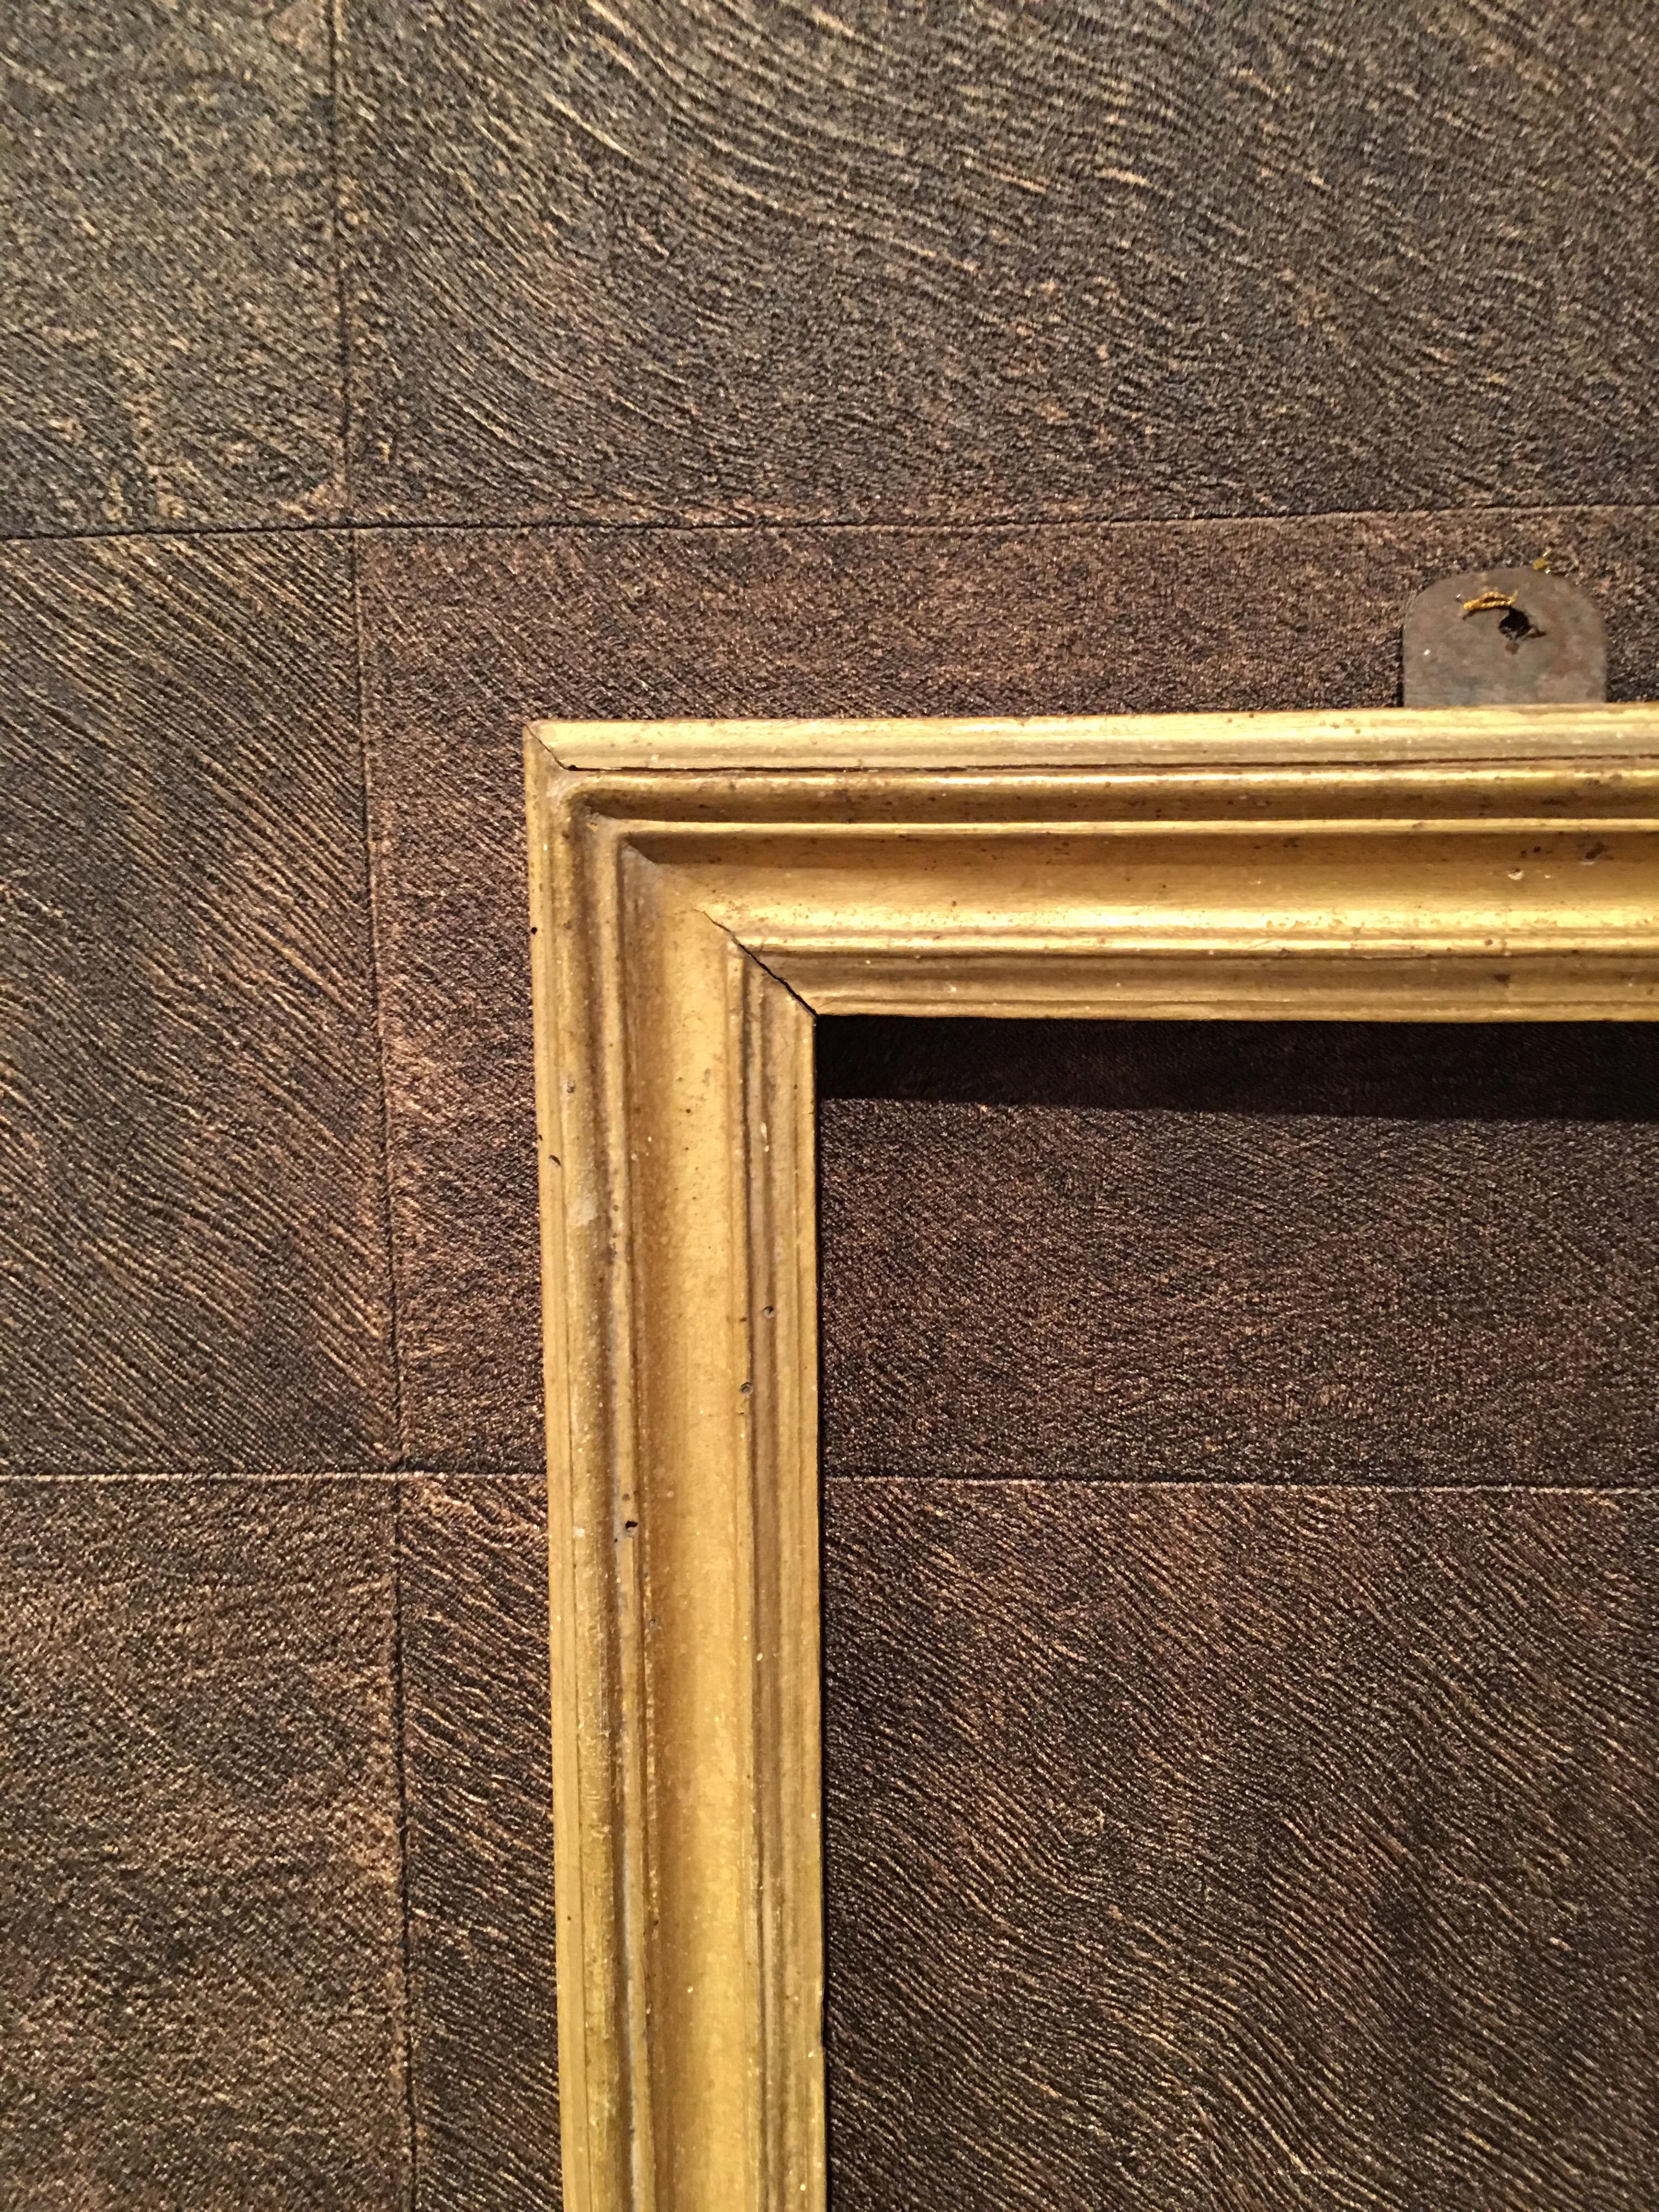 Salvator Rosa dernier cadre en bois doré du 17ème siècle.
Mesures internes cm 24 x 32.5

Pur exemple de cadre italien en bois doré Salvator Rosa du 17ème siècle.
